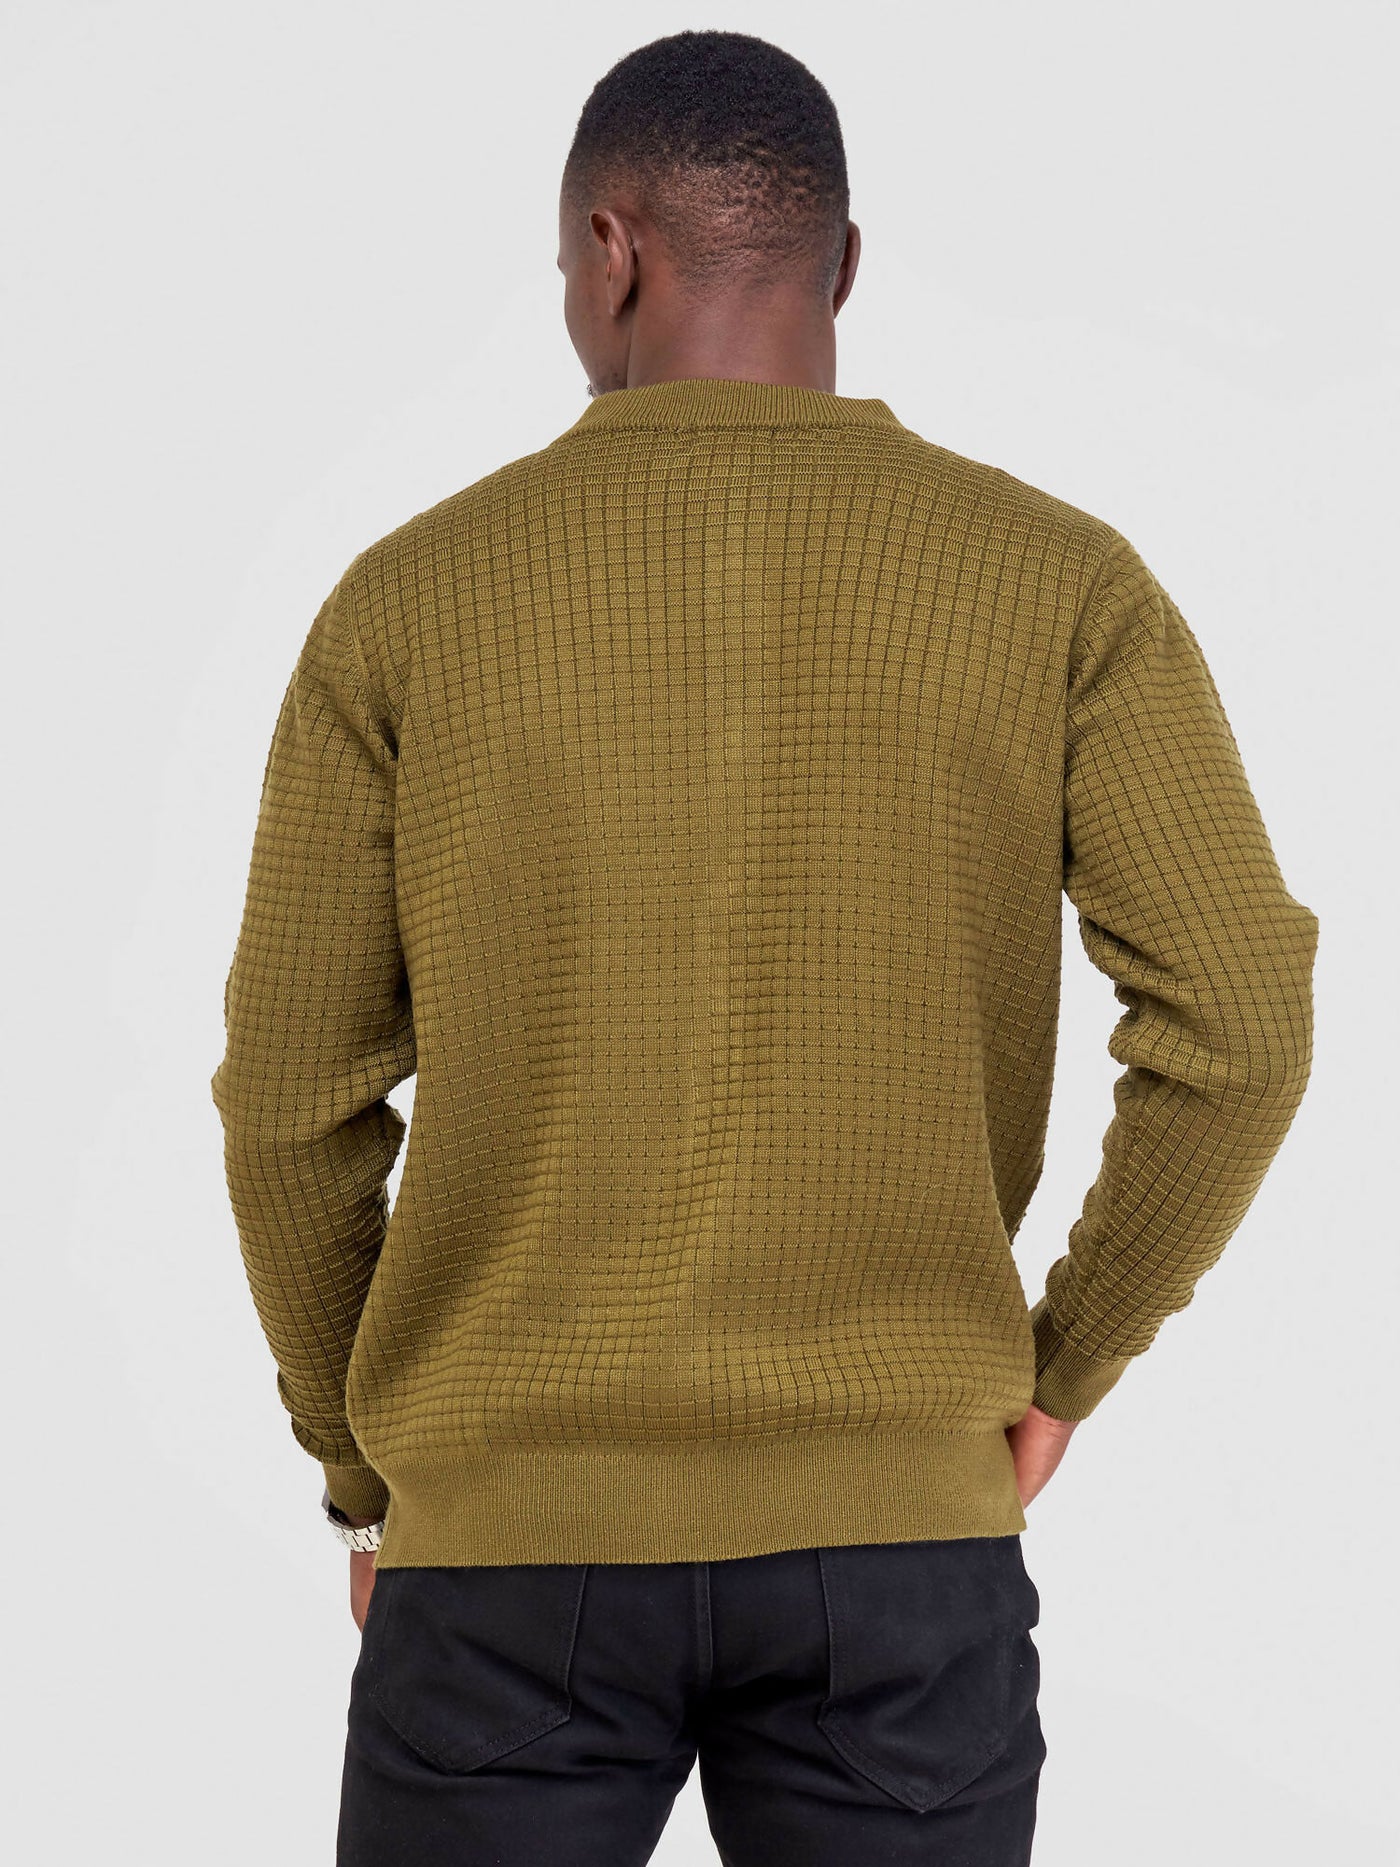 Anel's Knitwear Zetu Men's Zipped Sweater - Jungle Green